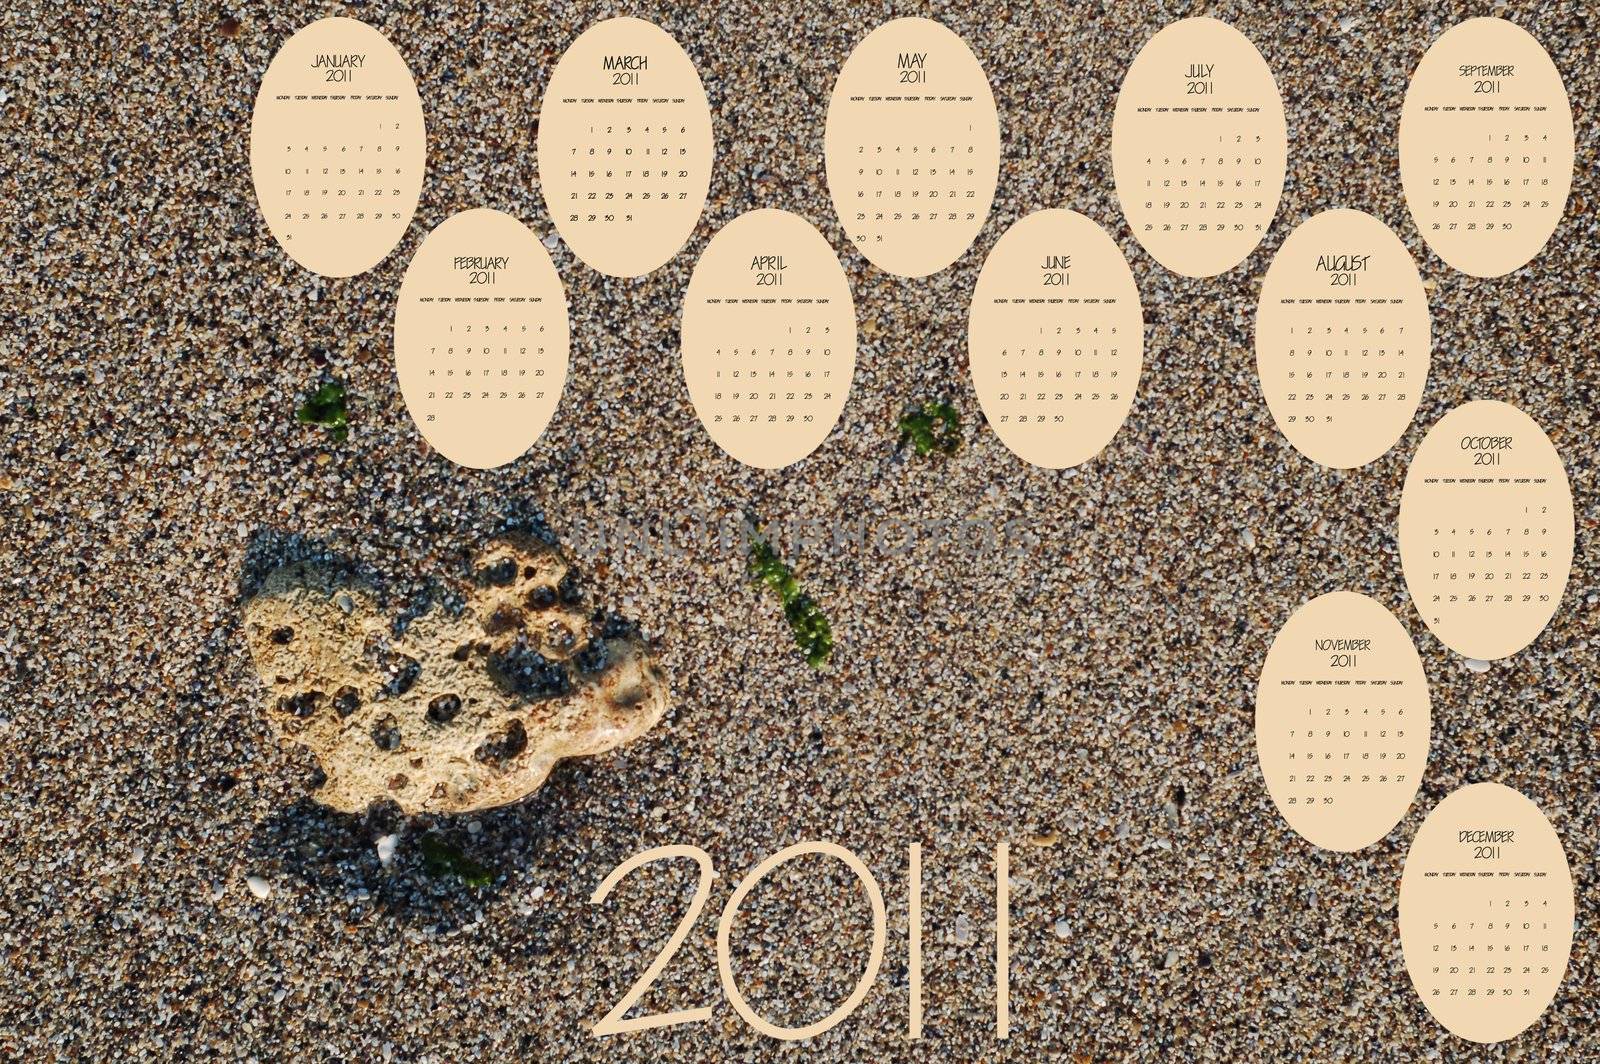 2011 sand calendar by robertosch